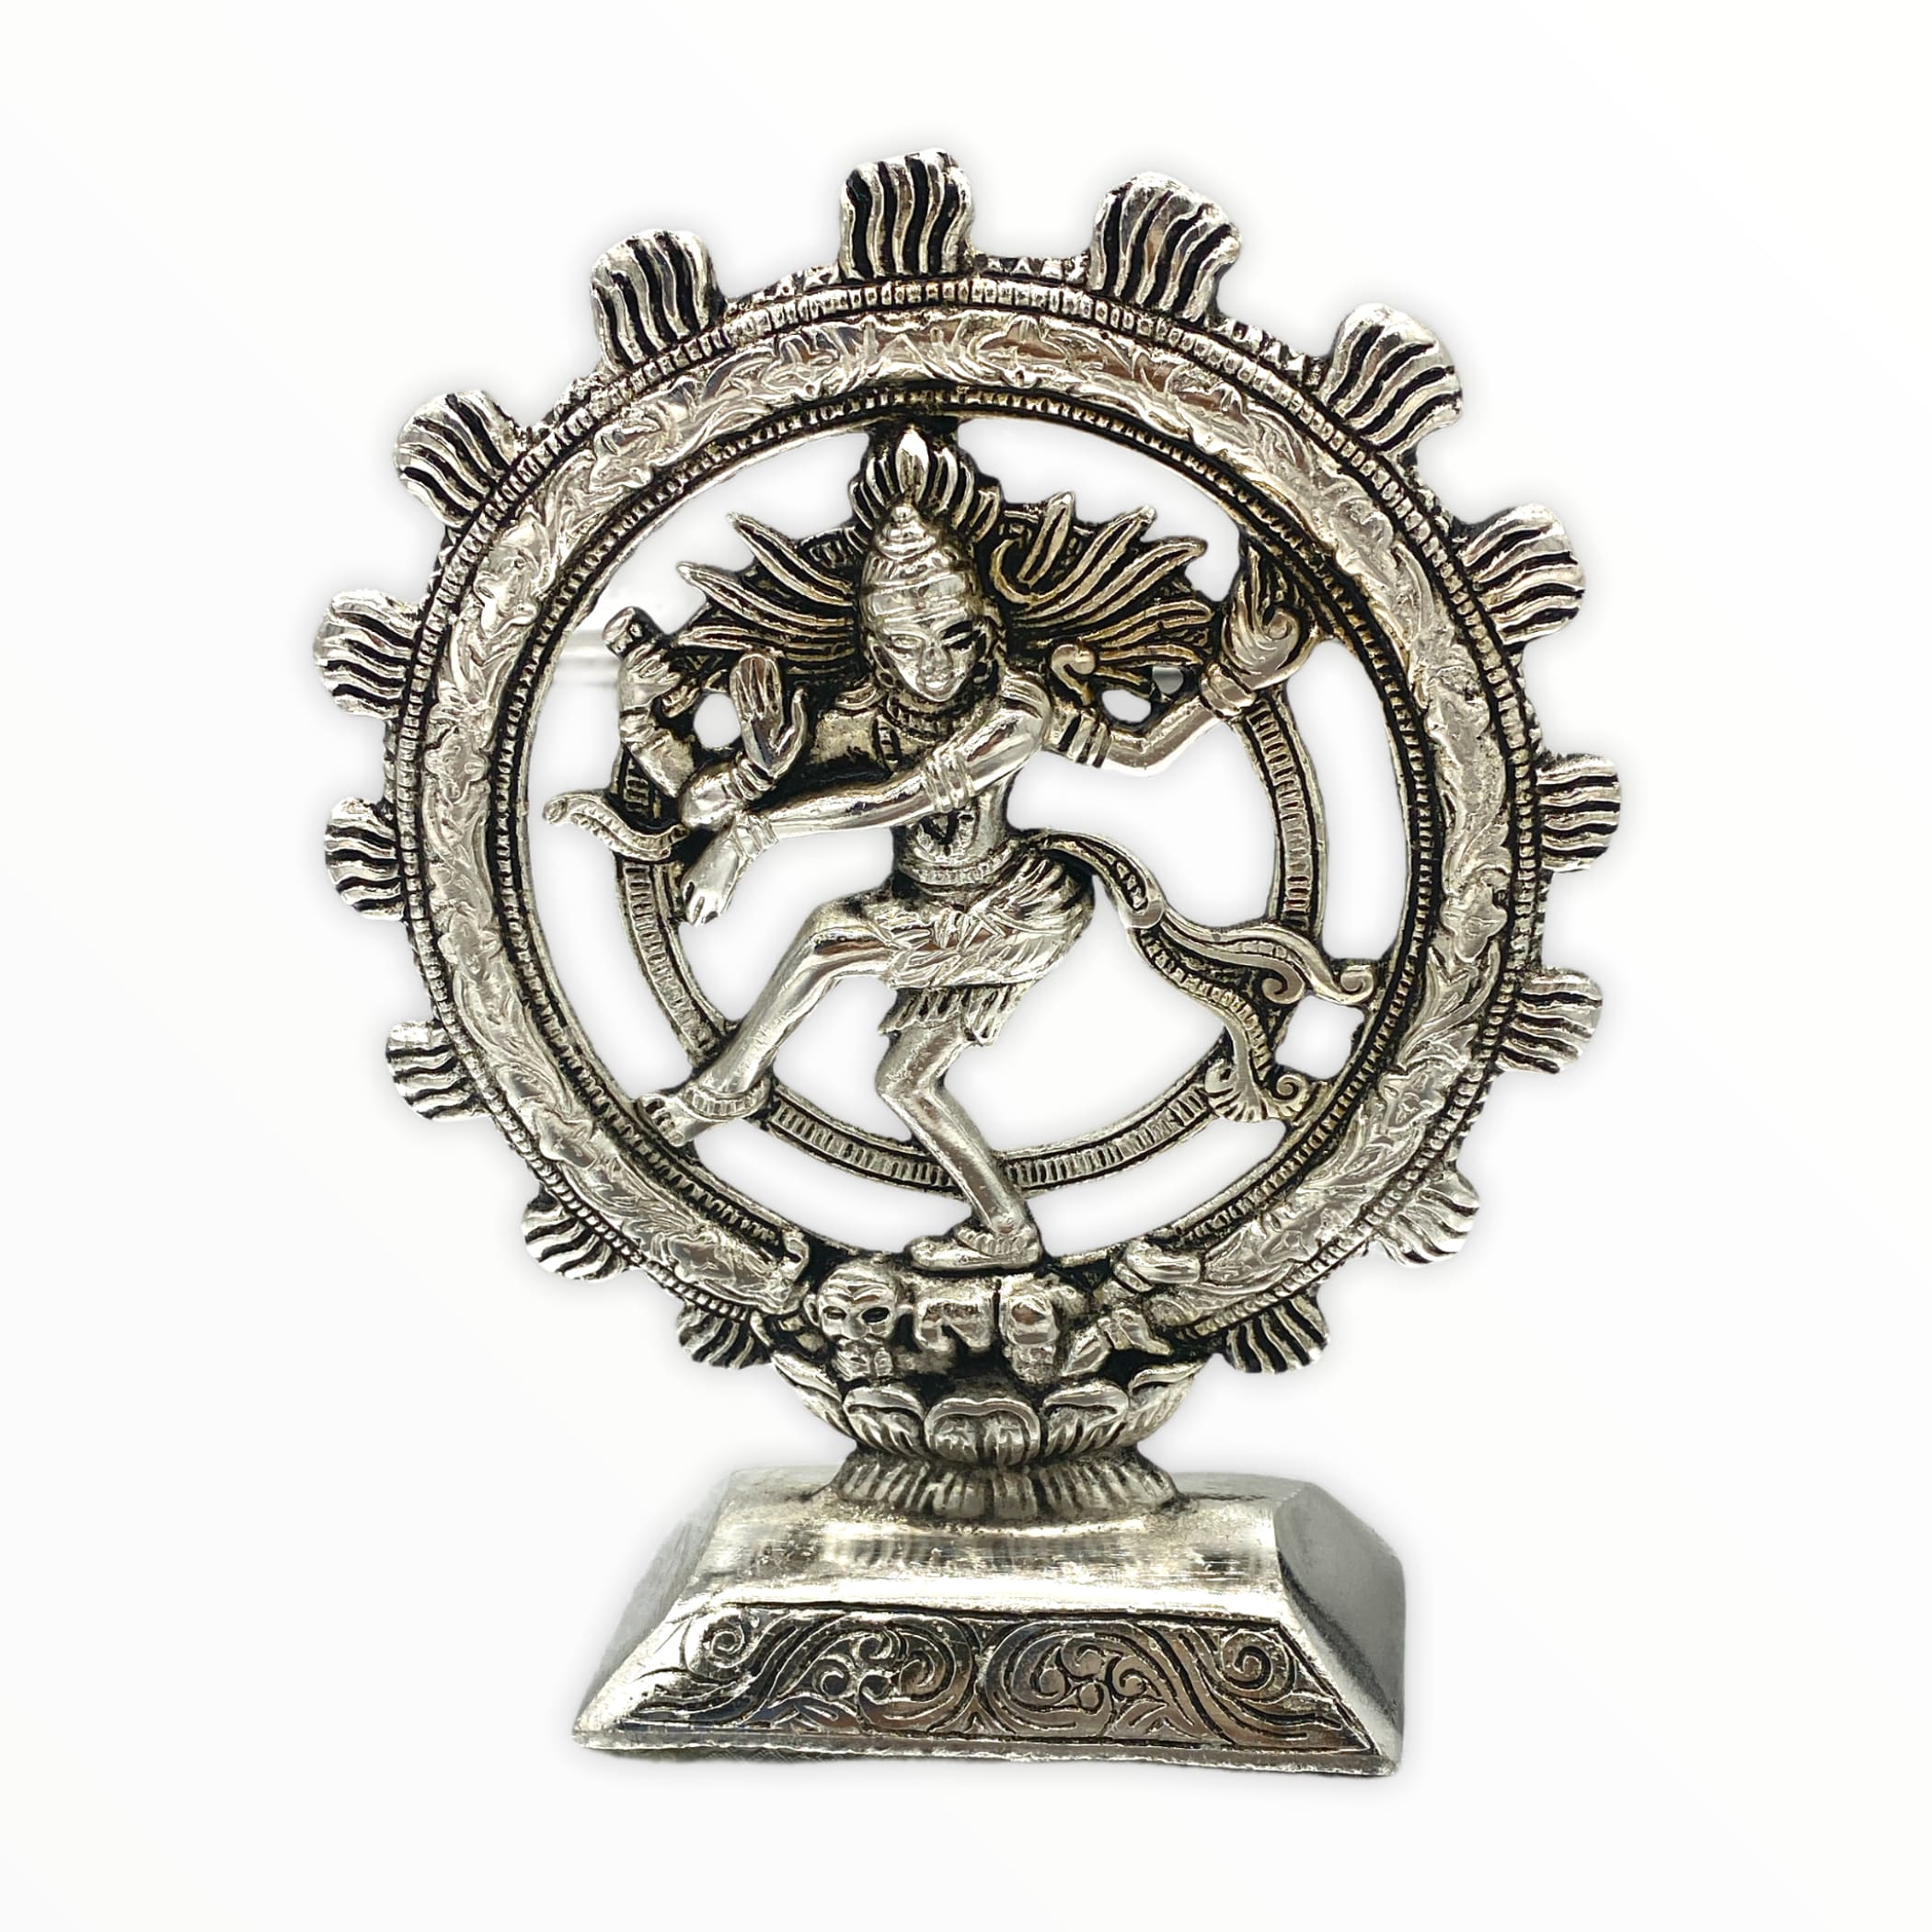 Dancing shiva (natraj) statue nataraja sculpture shiv natraj